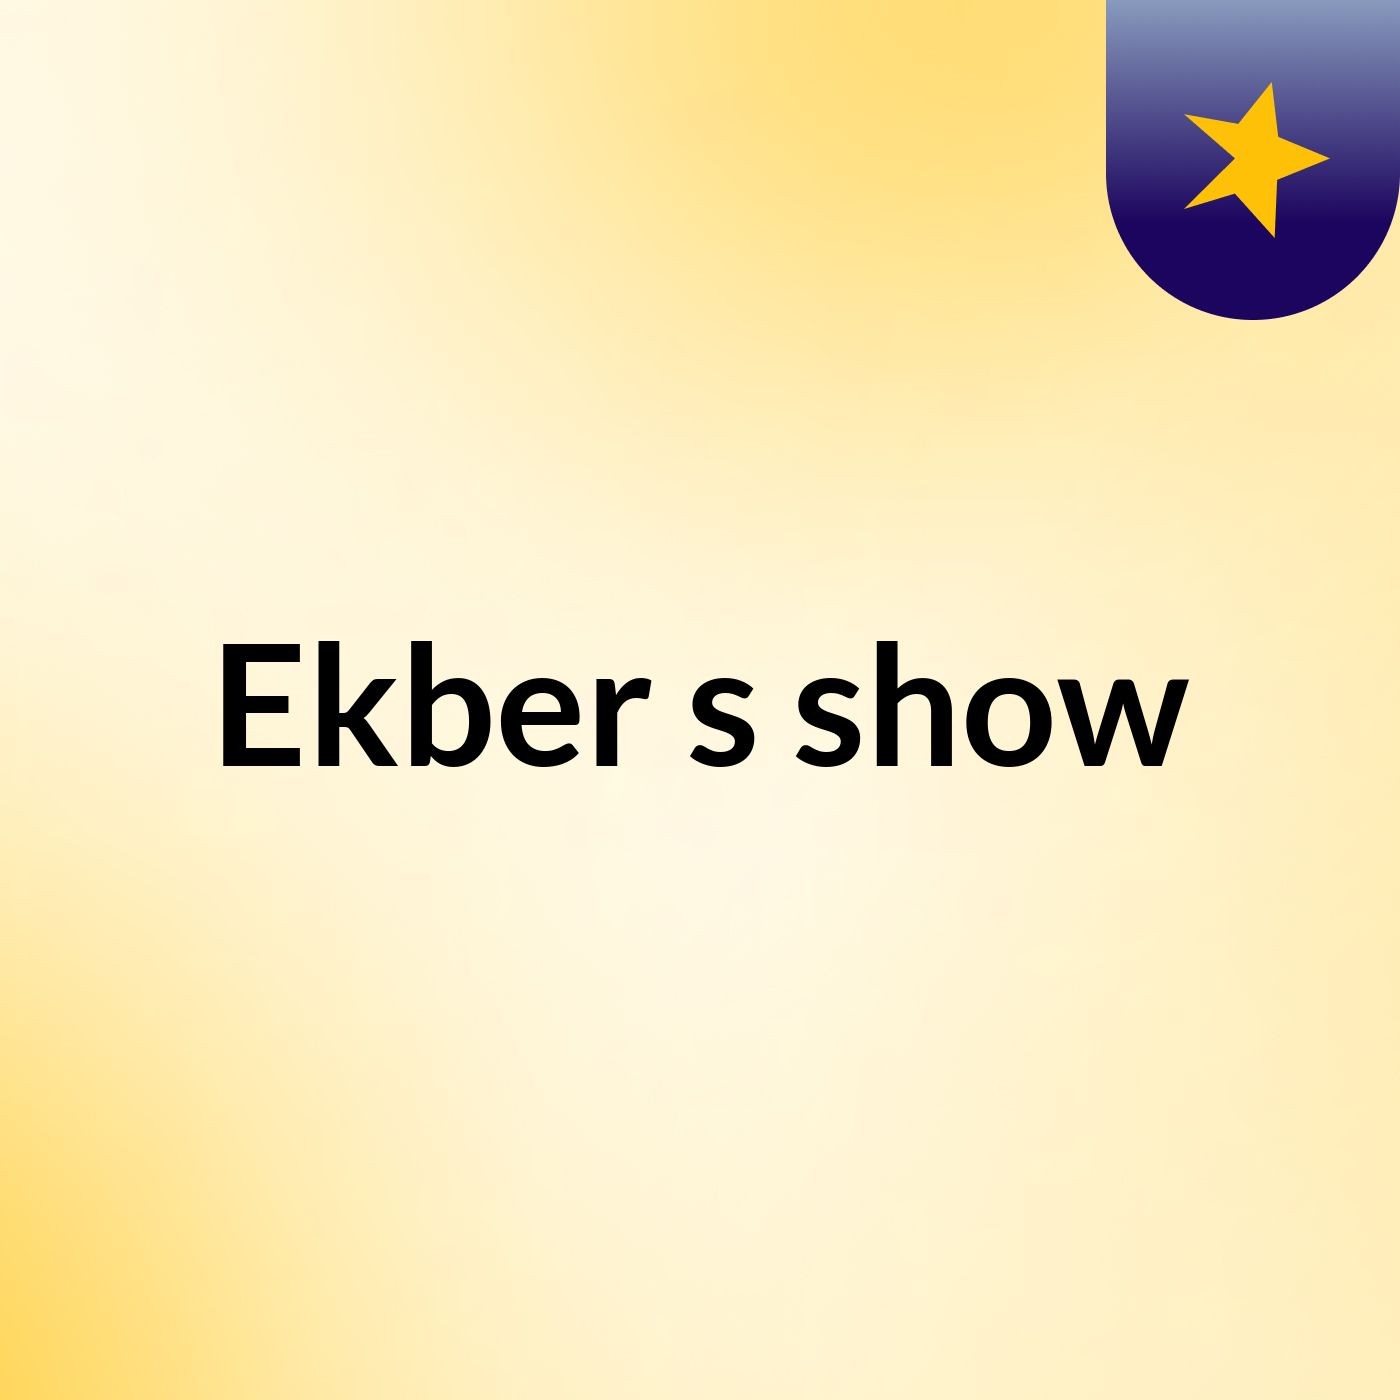 Ekber's show